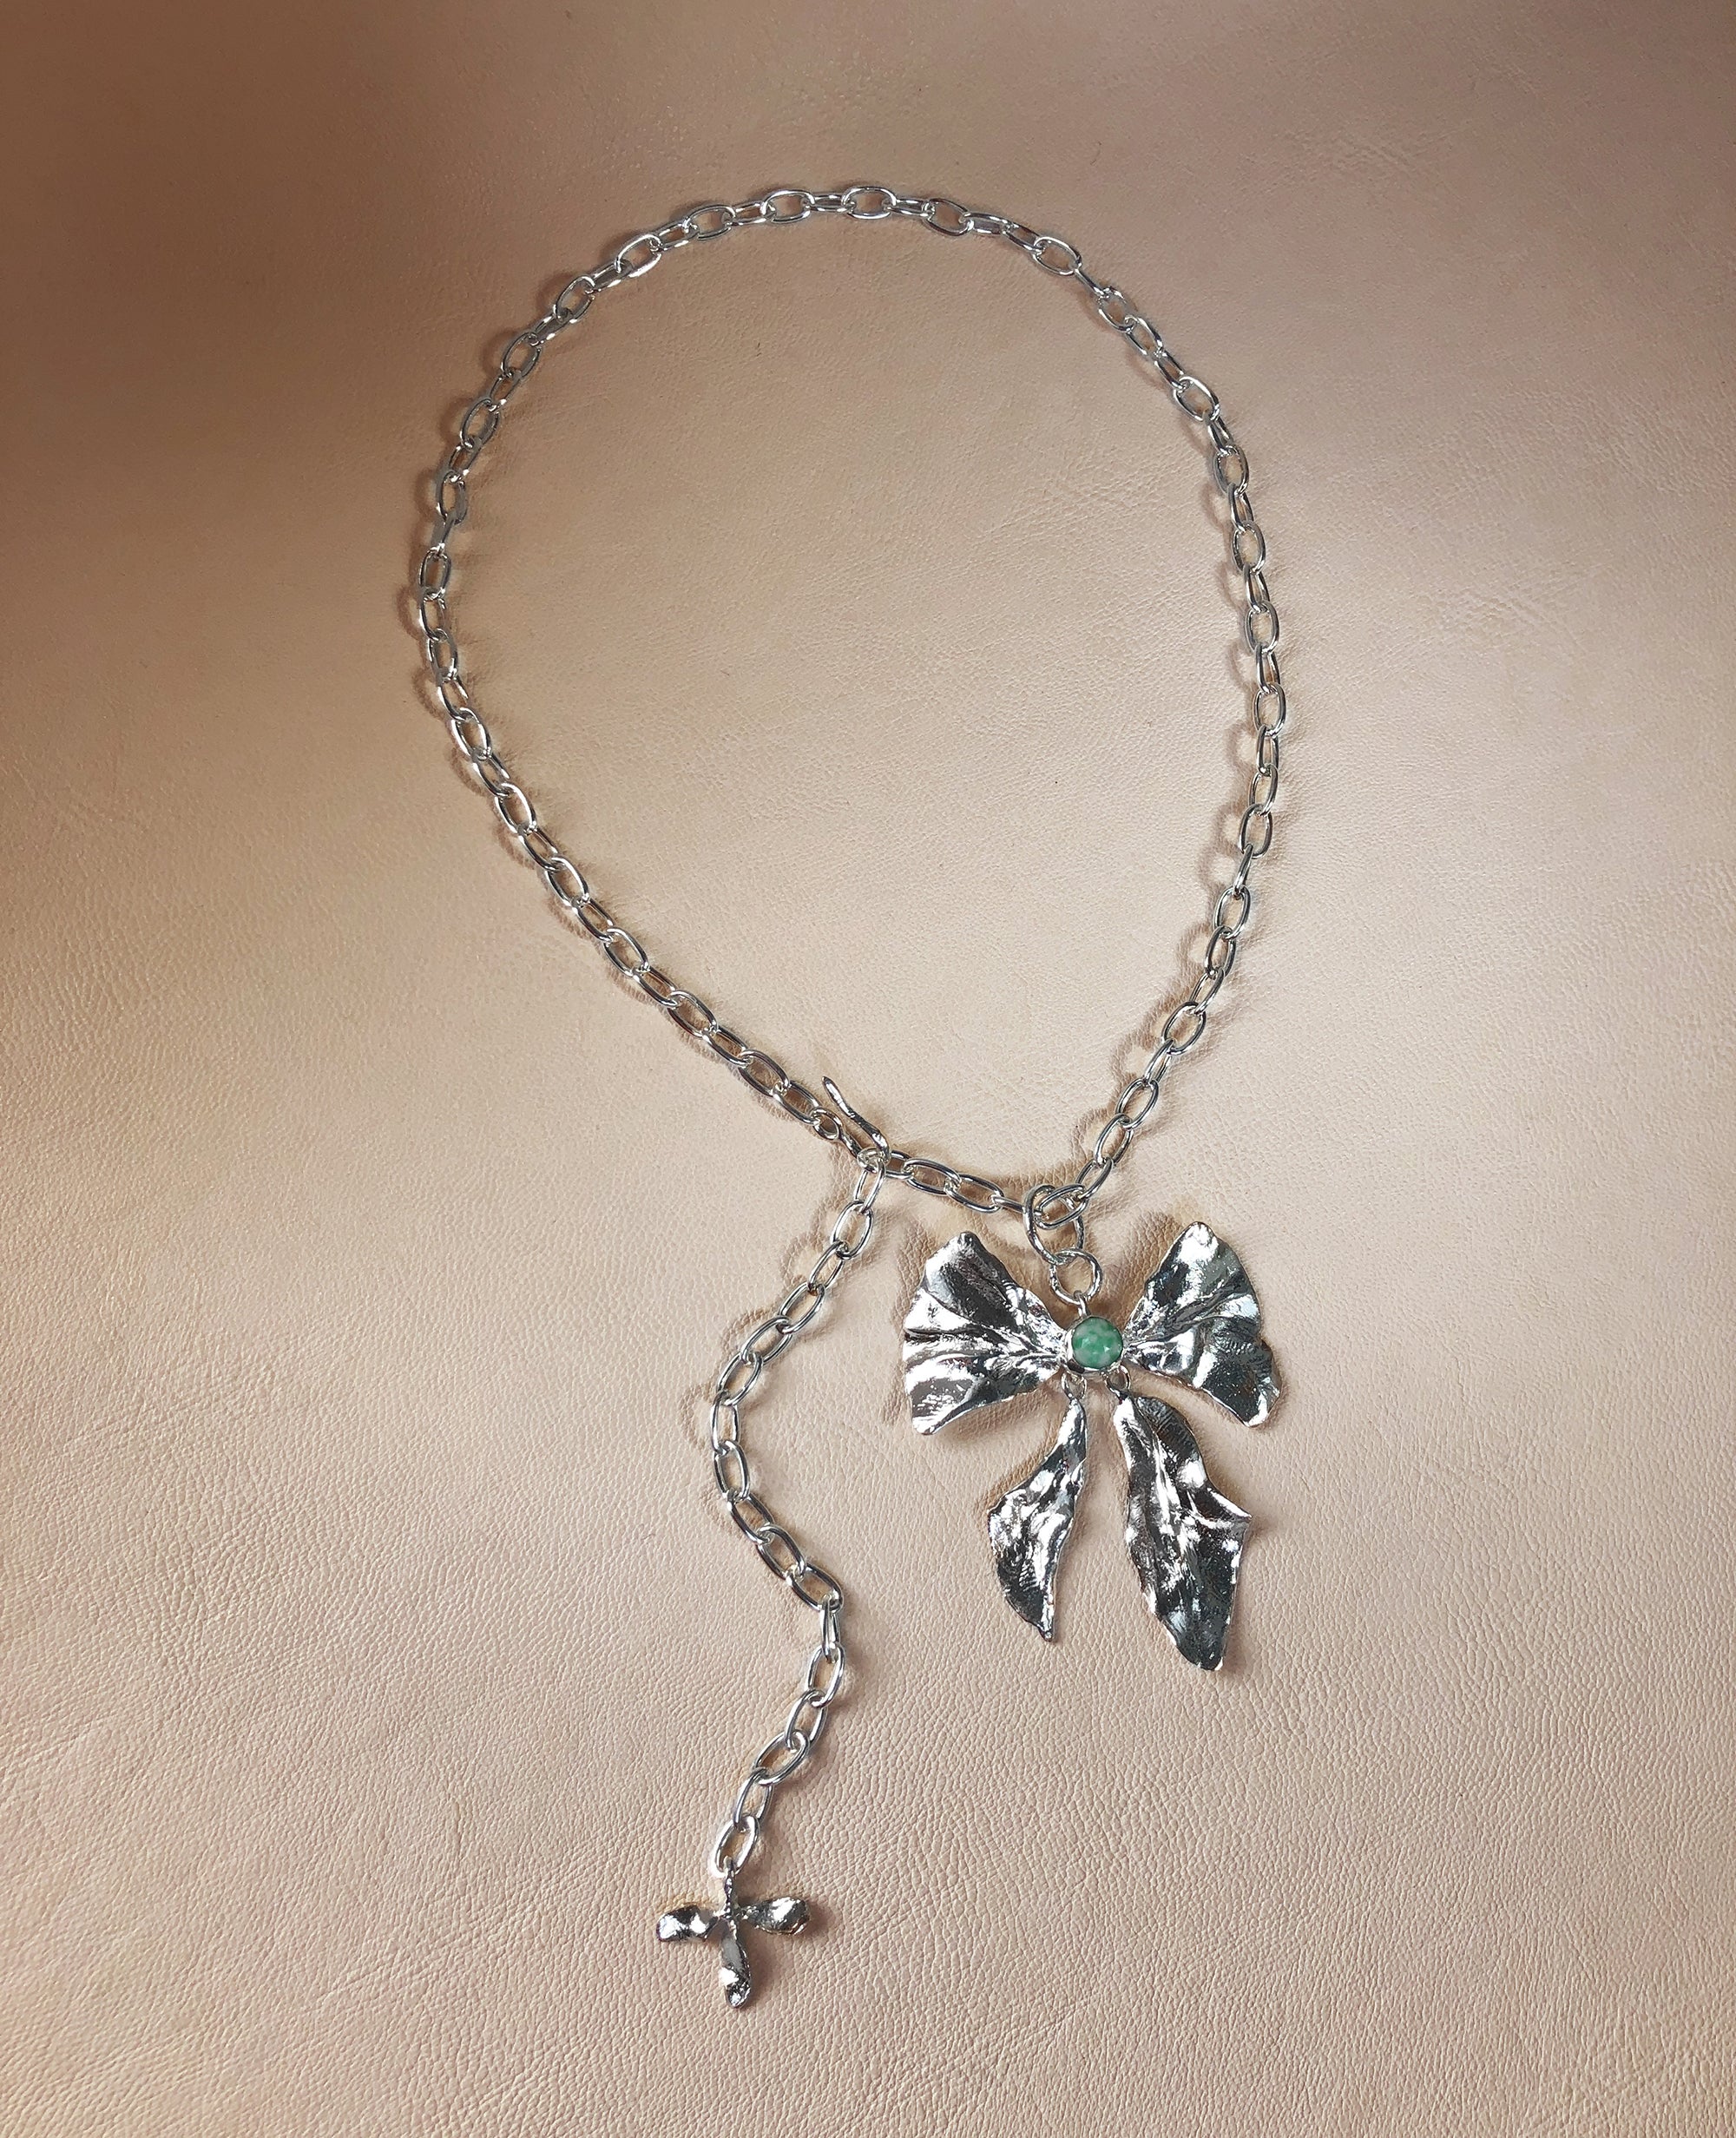 REIGN BOW // collier avec jade zing jiang - ORA-C jewelry - bijoux faits à la main par Caroline Pham, designer indépendante basée à Montréal